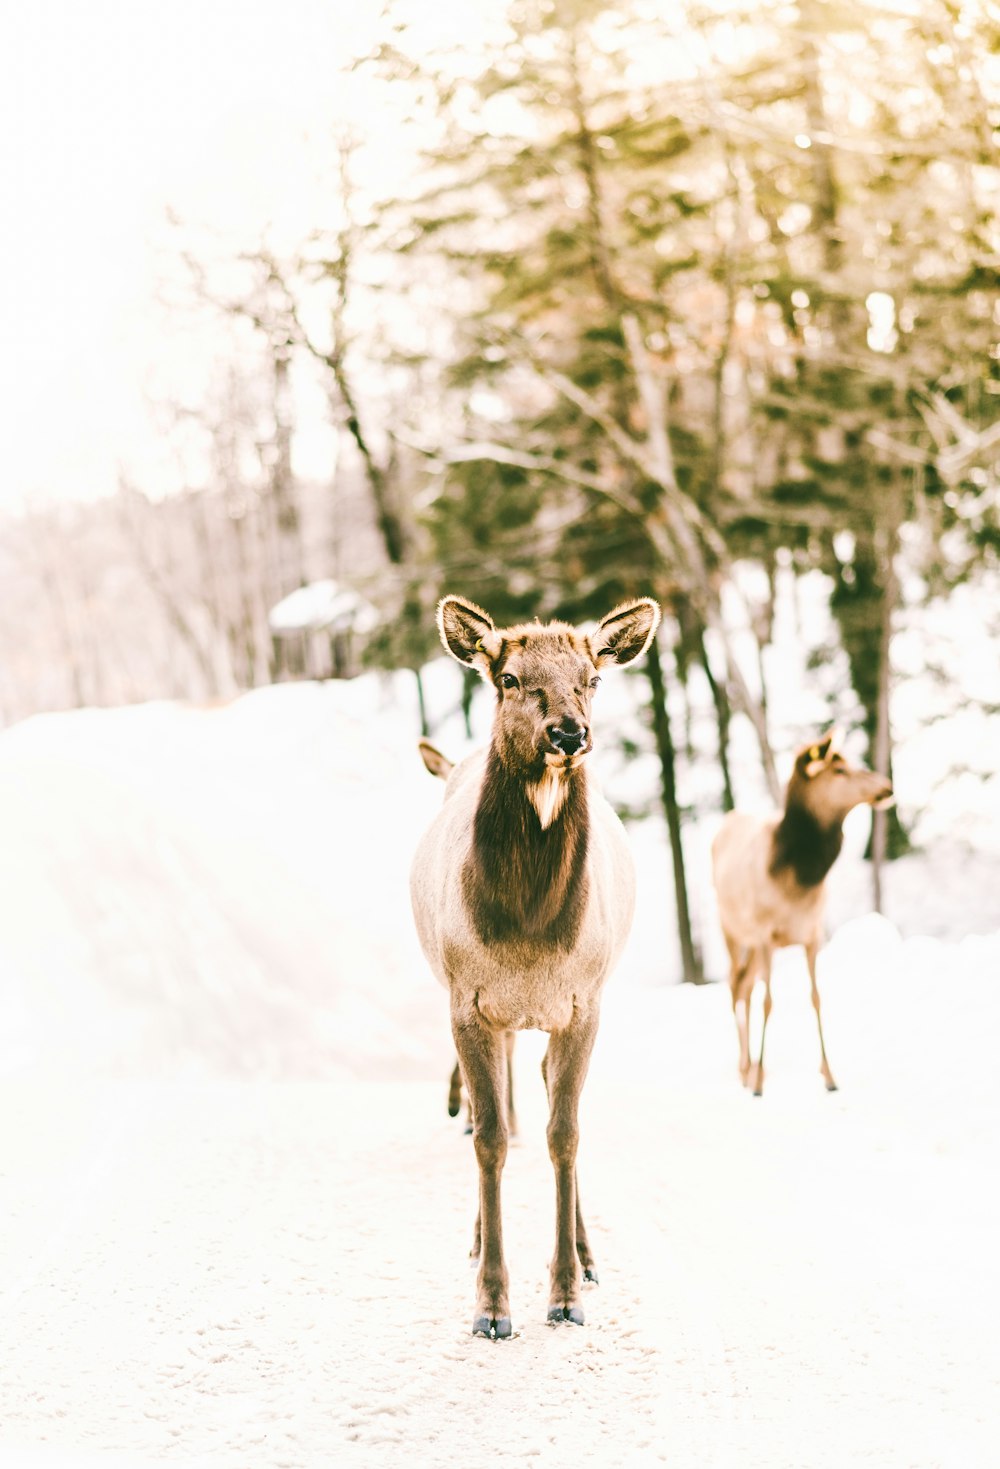 braune Tiere, die auf schneebedecktem Land stehen